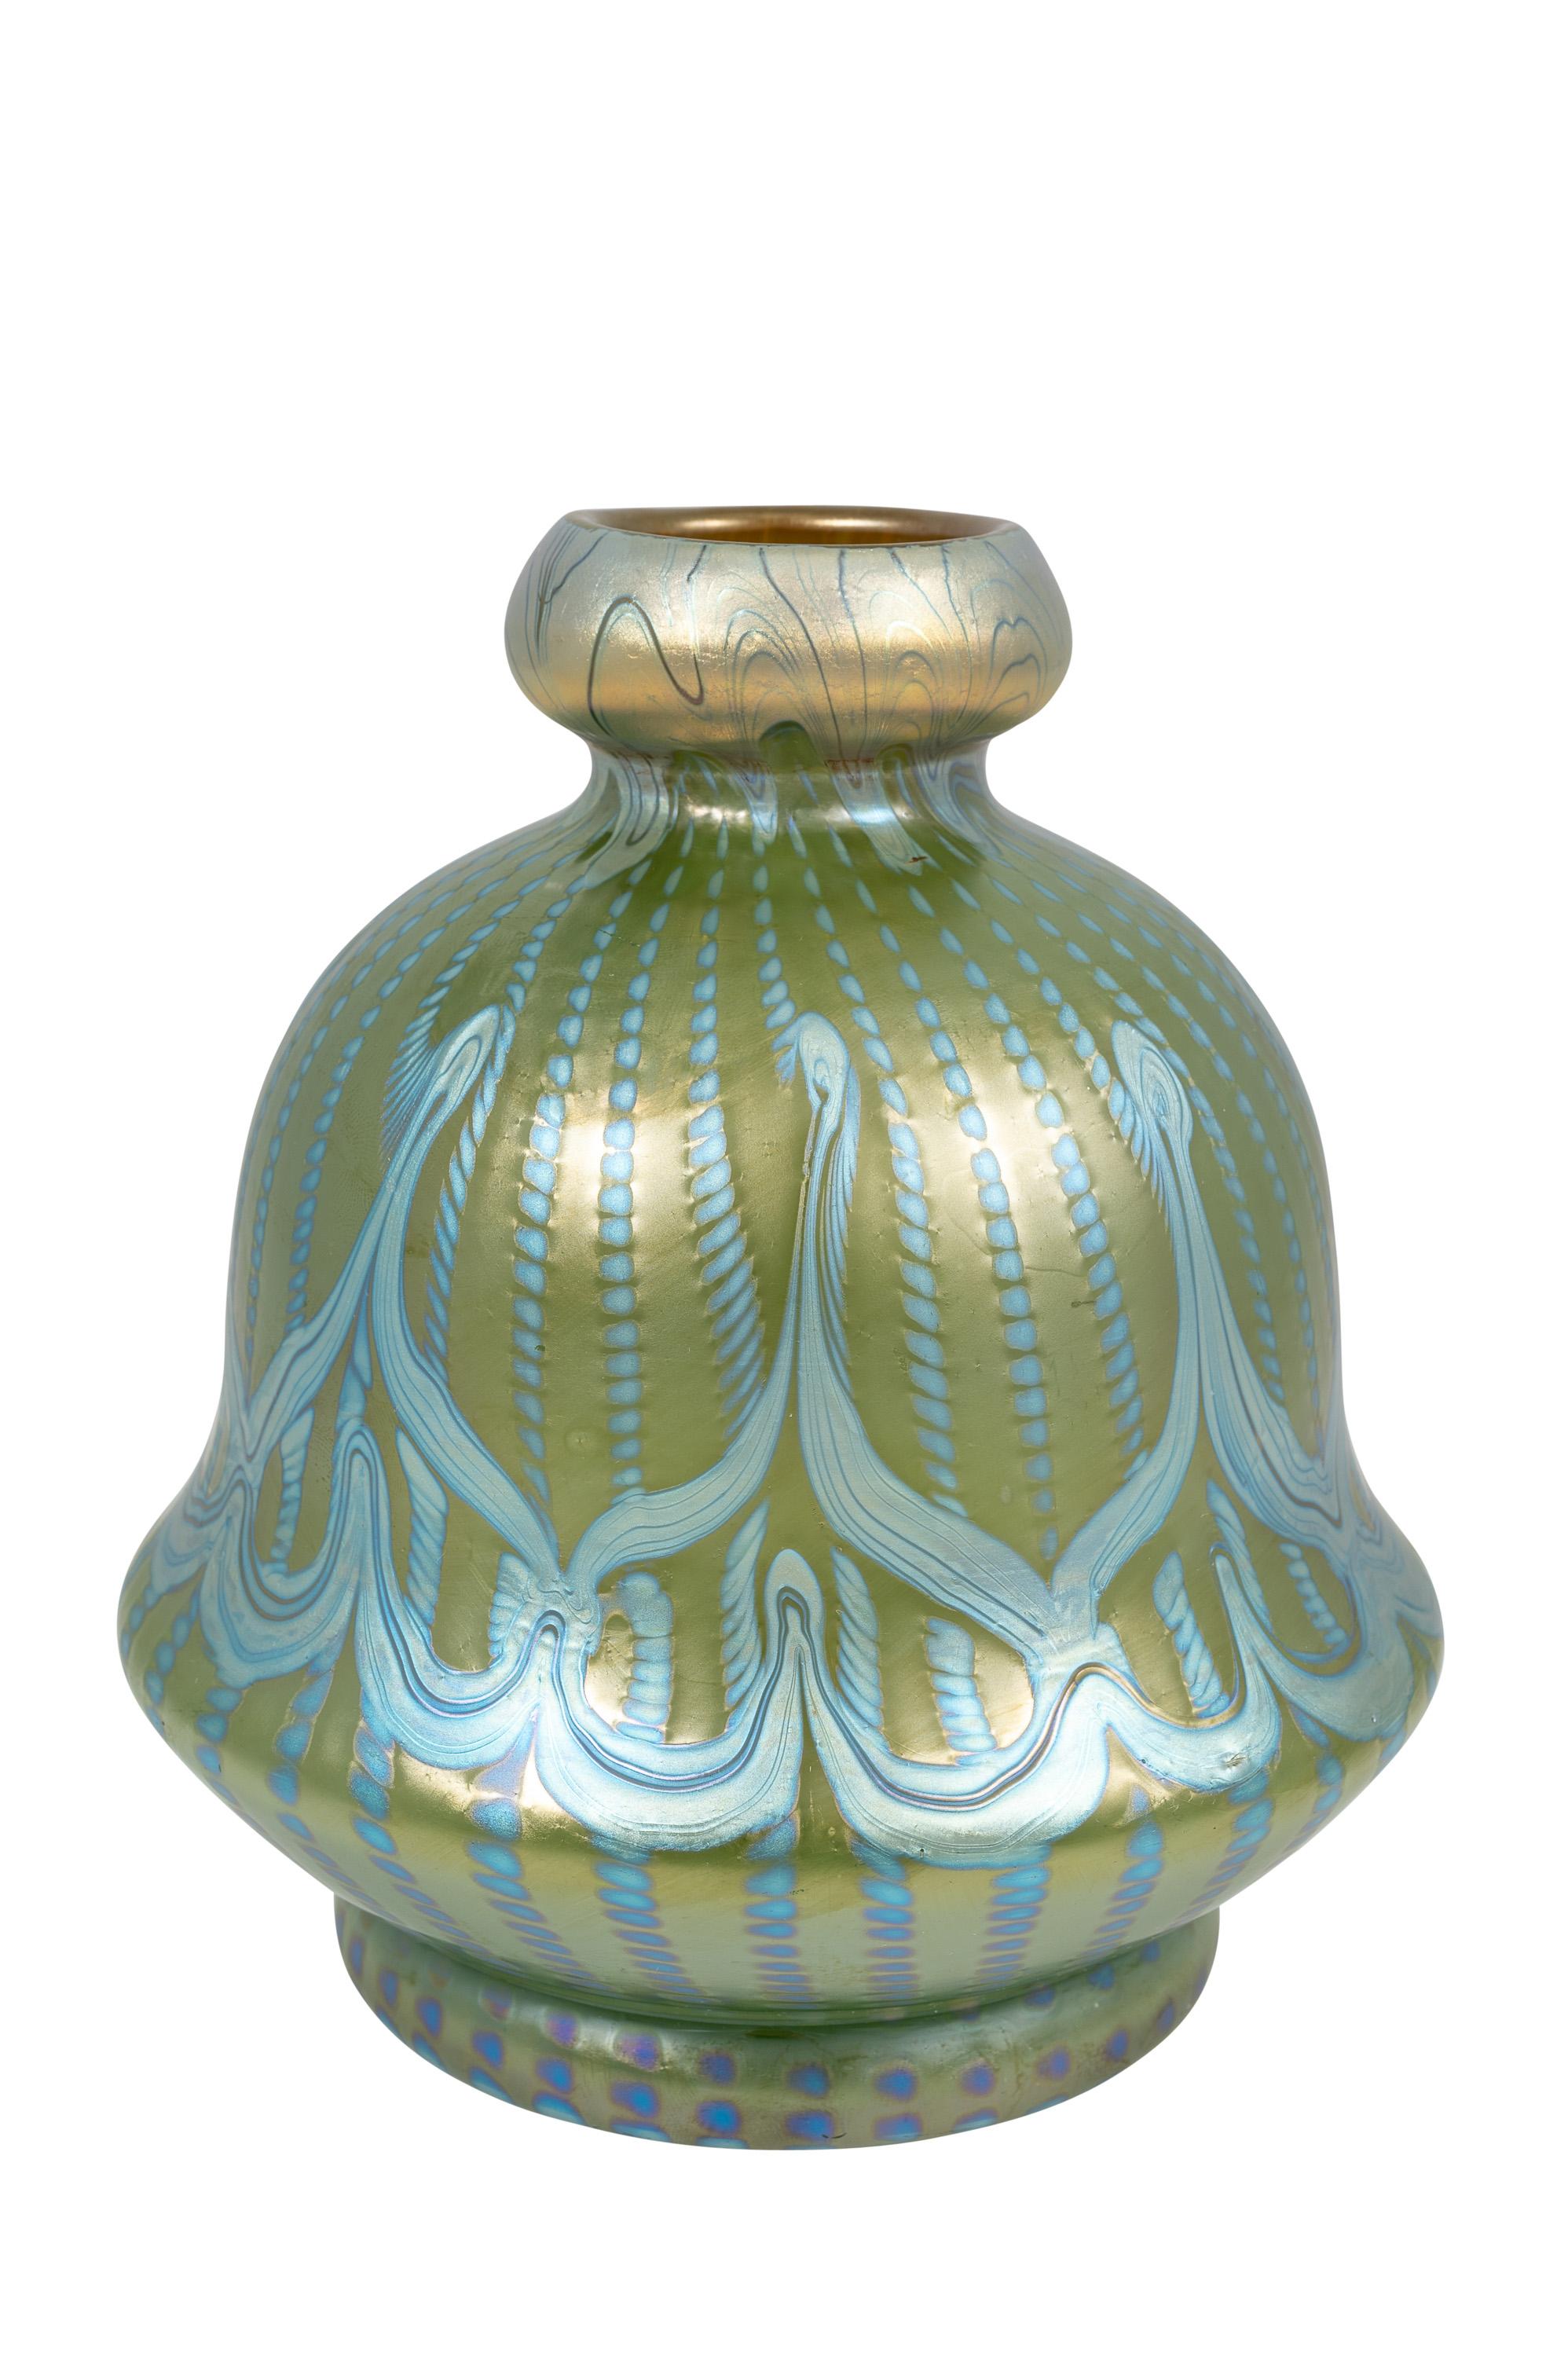 Austrian Bohemian Glass Vase Loetz circa 1900 Signed Art Nouveau Jugendstil Blue Green For Sale